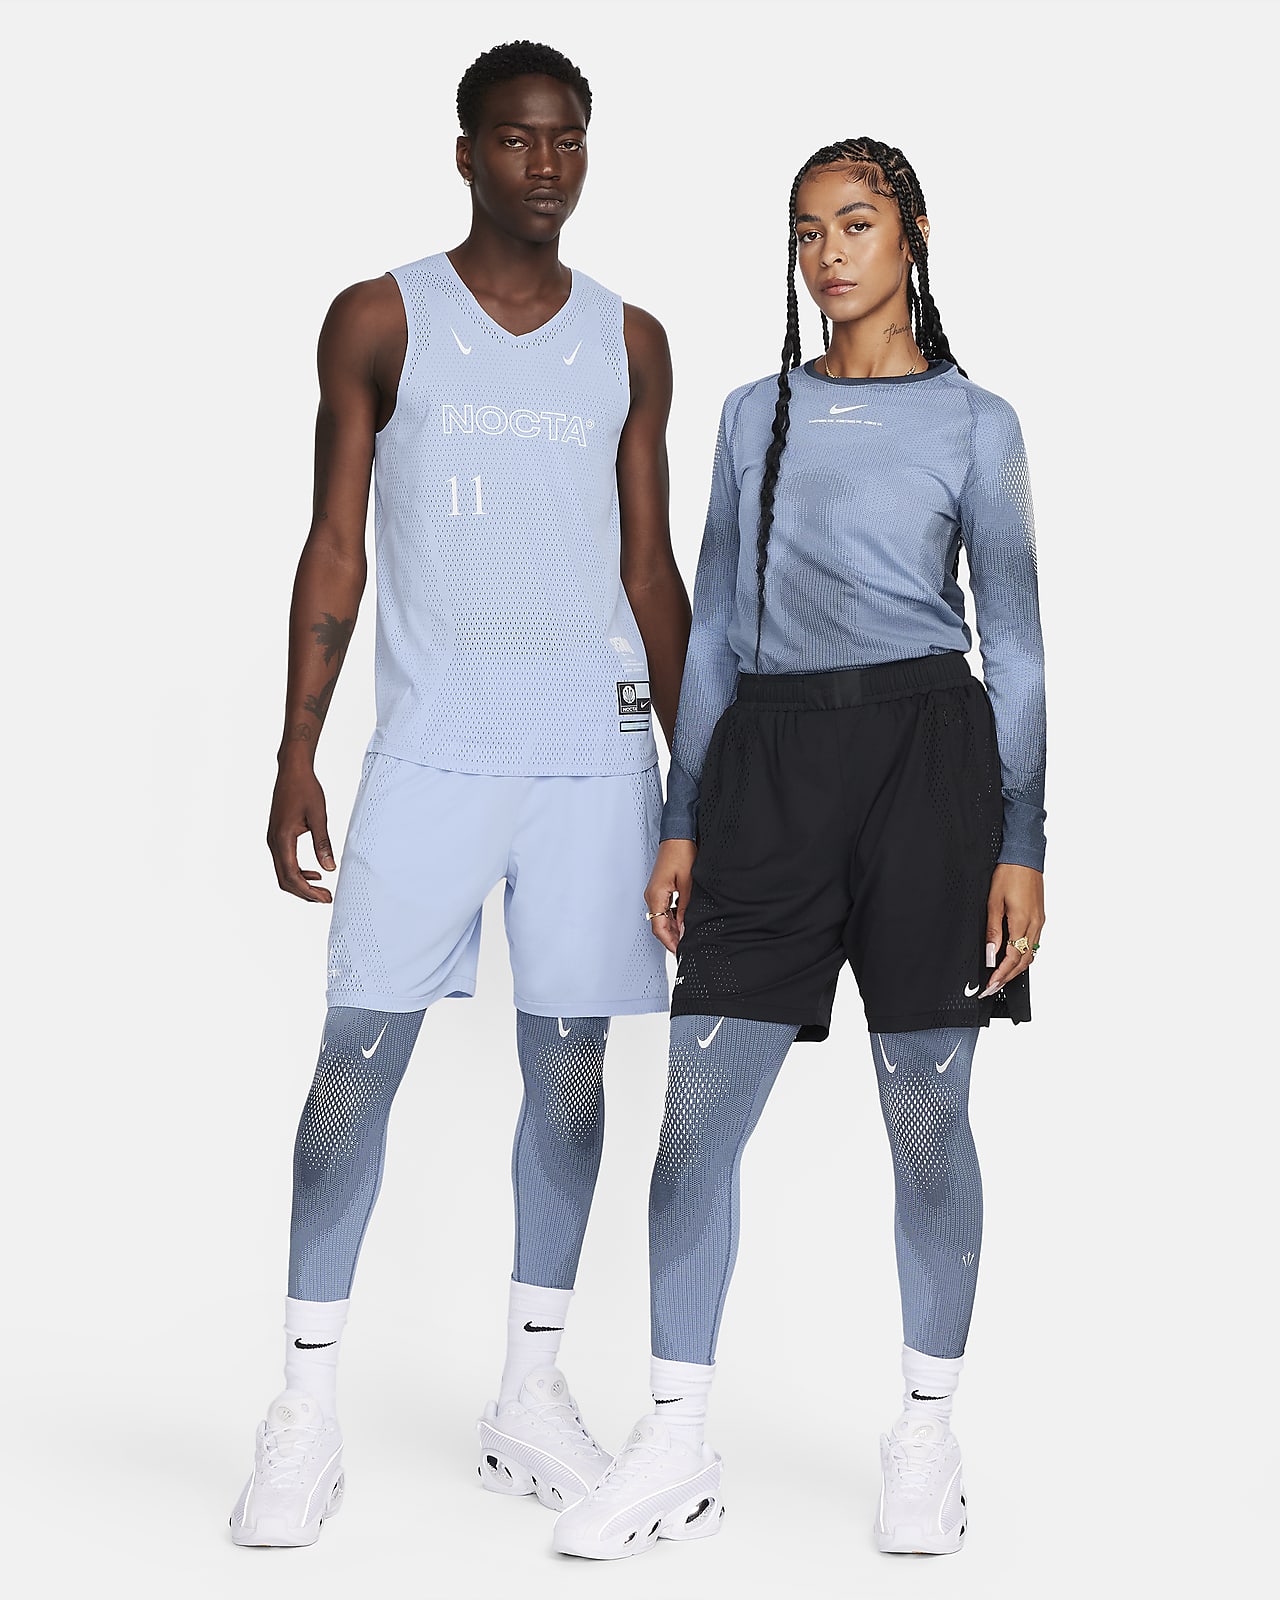 Blue Nike NOCTA Dri-FIT Tights x Drake